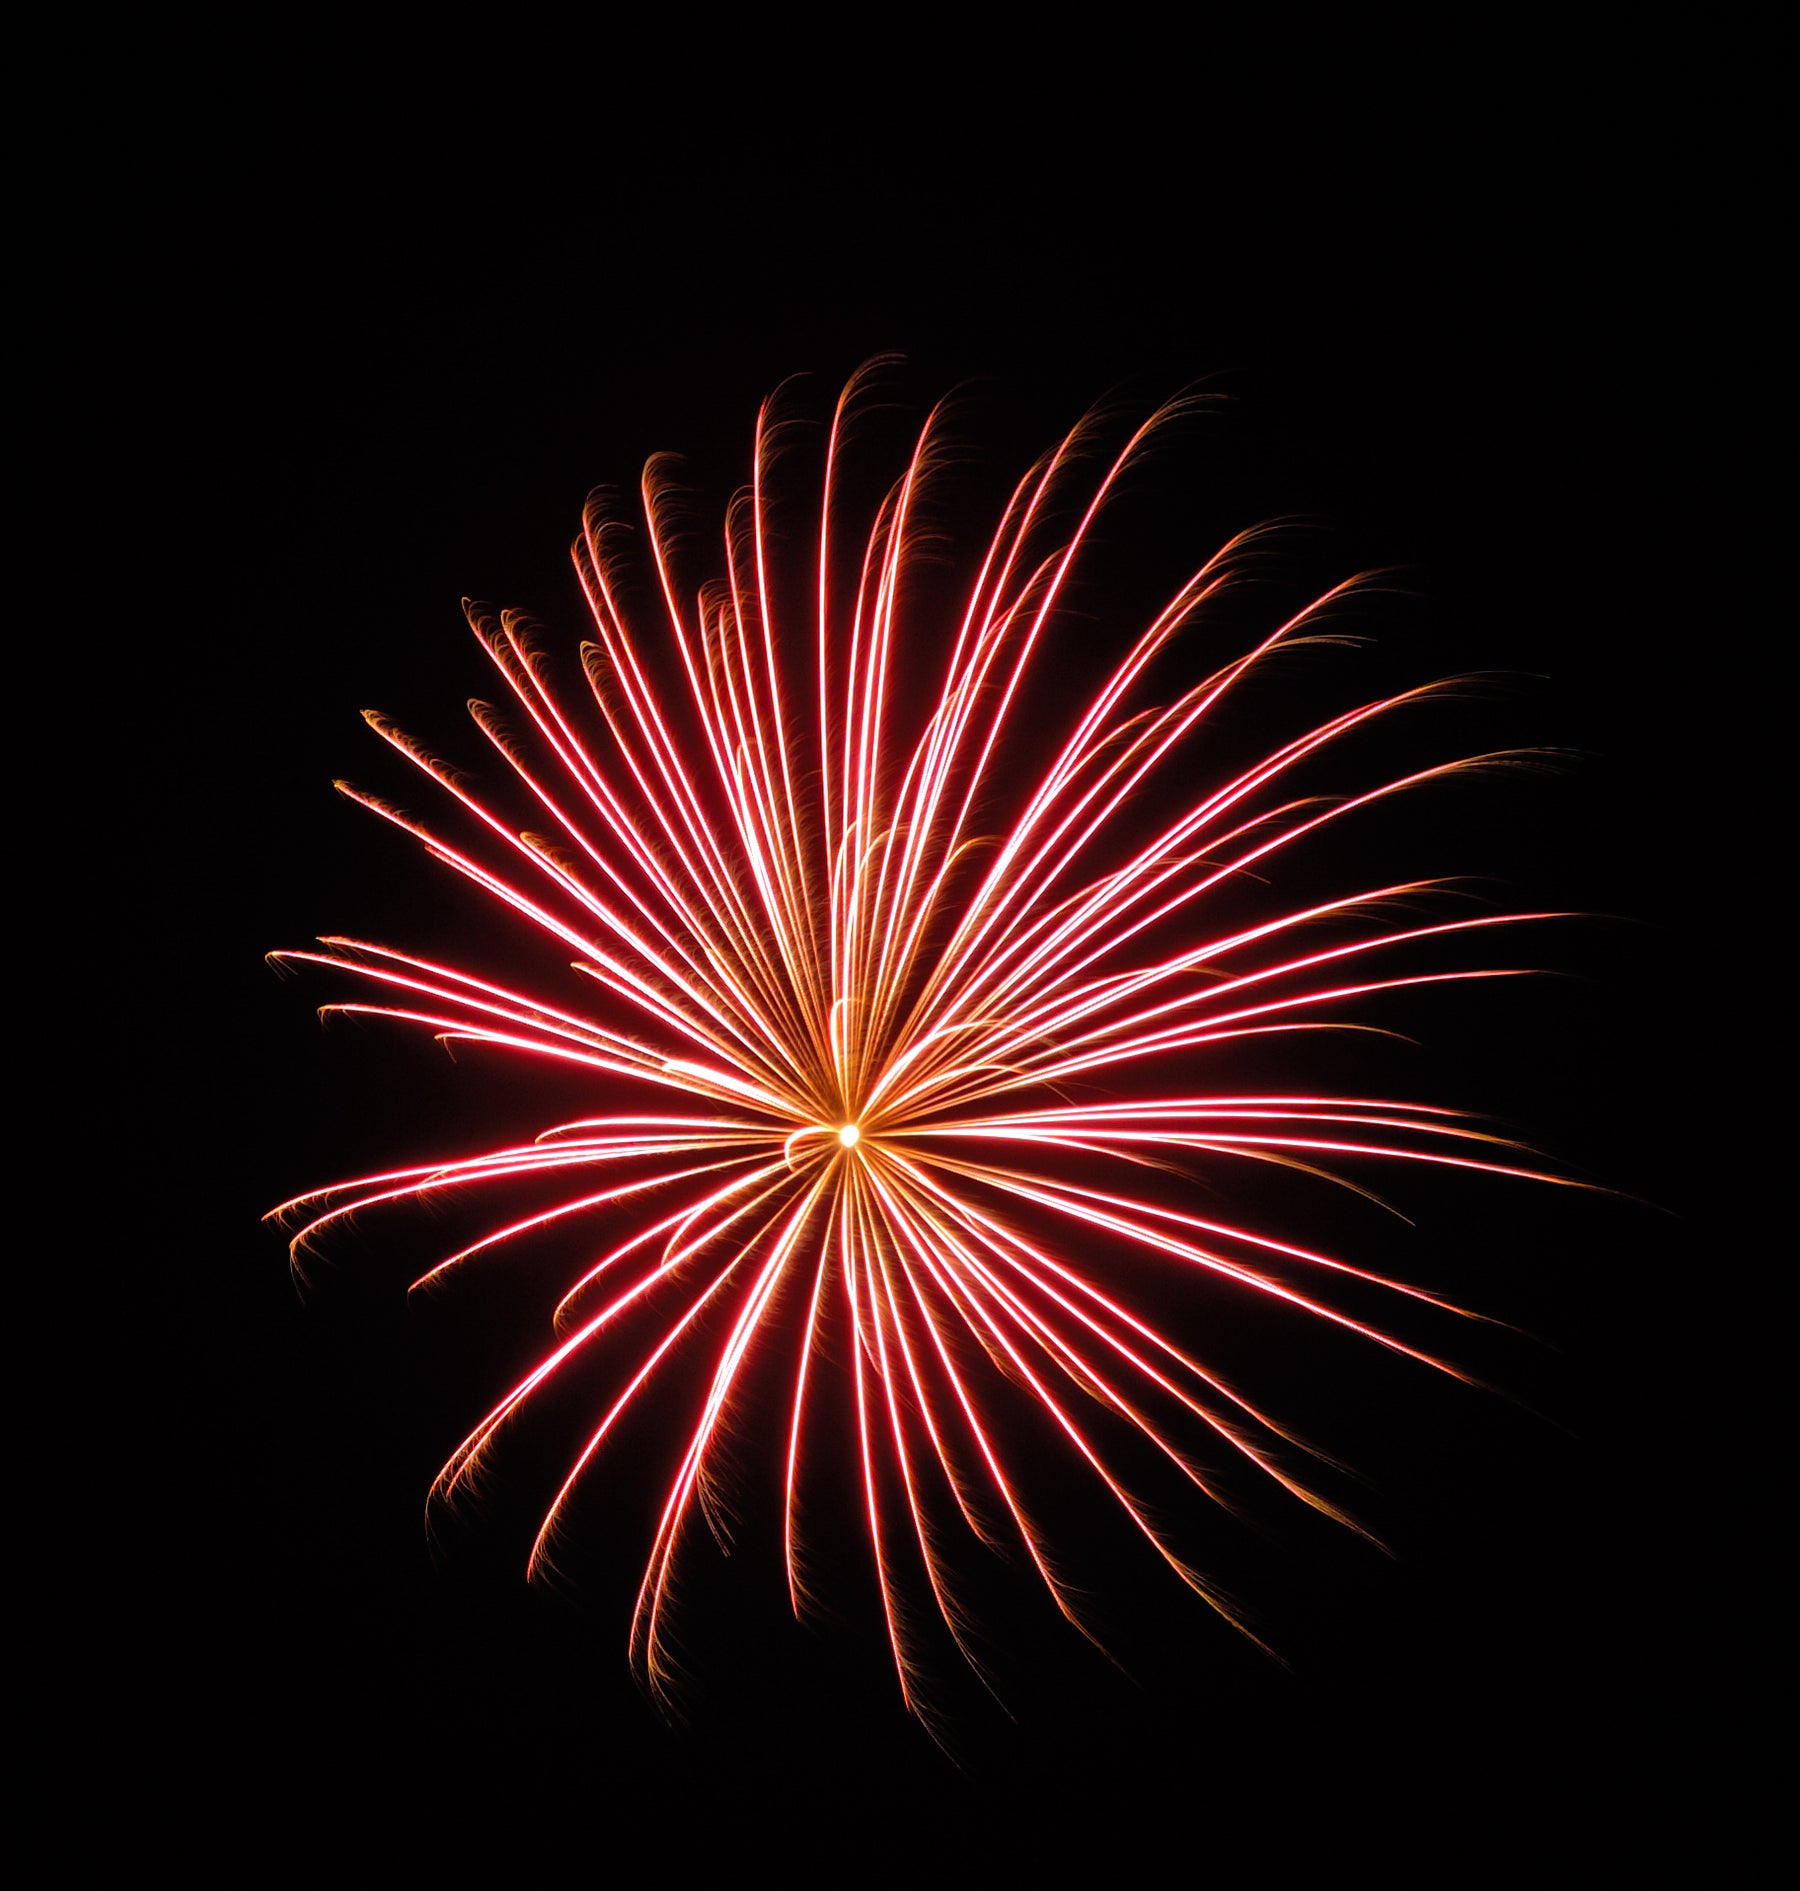 Scheveningen International Fireworks Competition